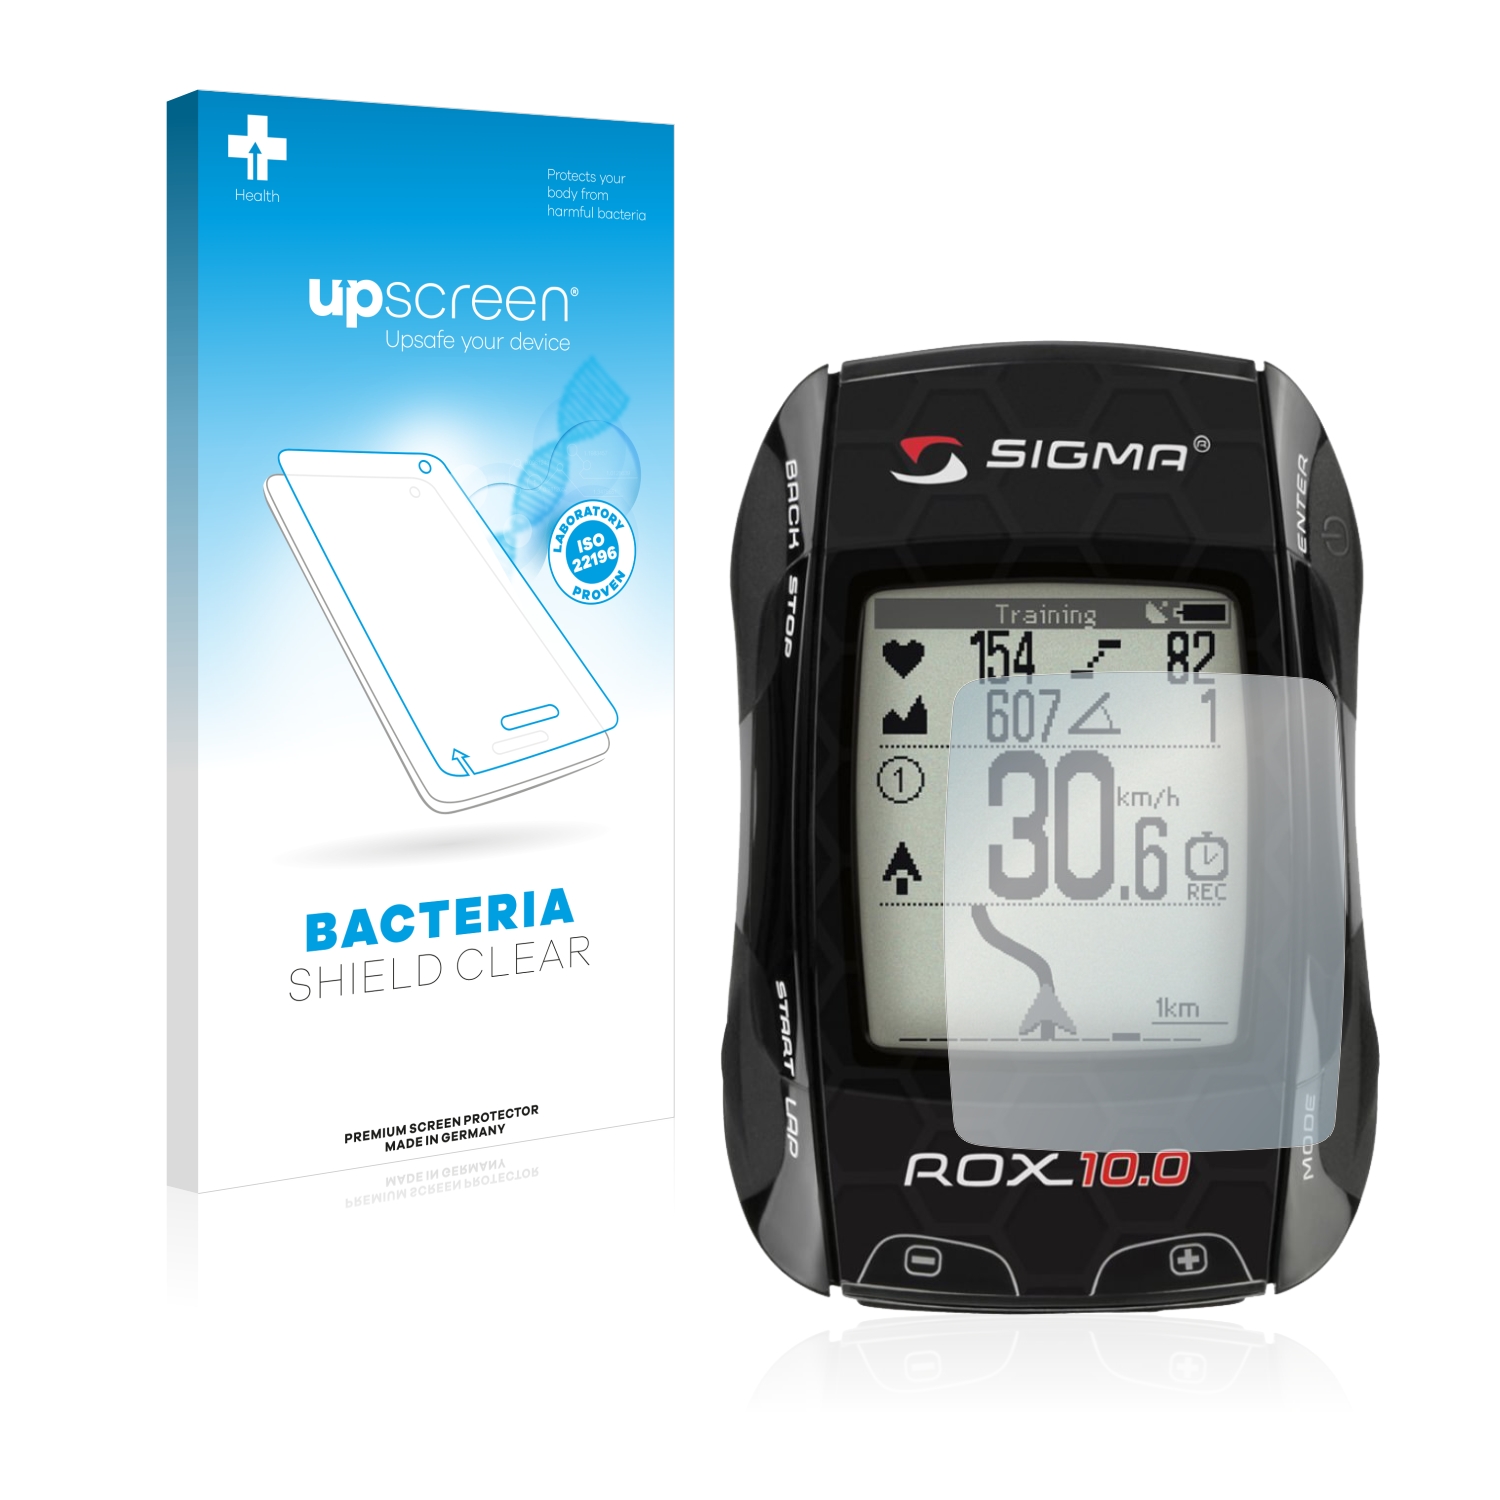 Antibakteriální fólie upscreen Bacteria Shield pro Sigma ROX 10.0